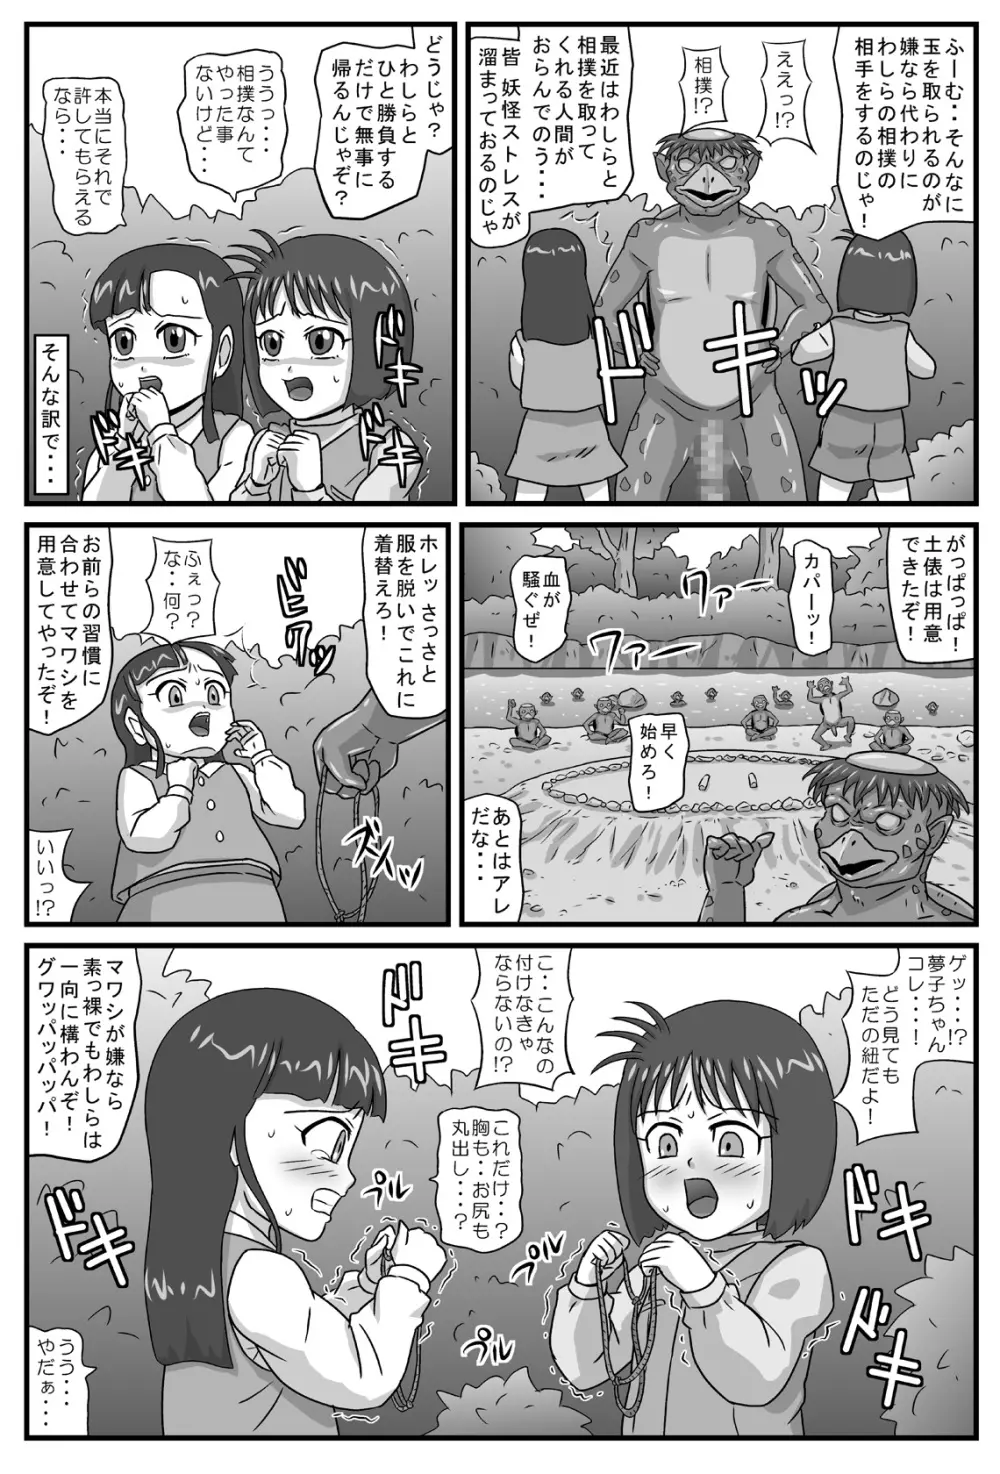 百鬼夜姦「相撲地獄編」 4ページ